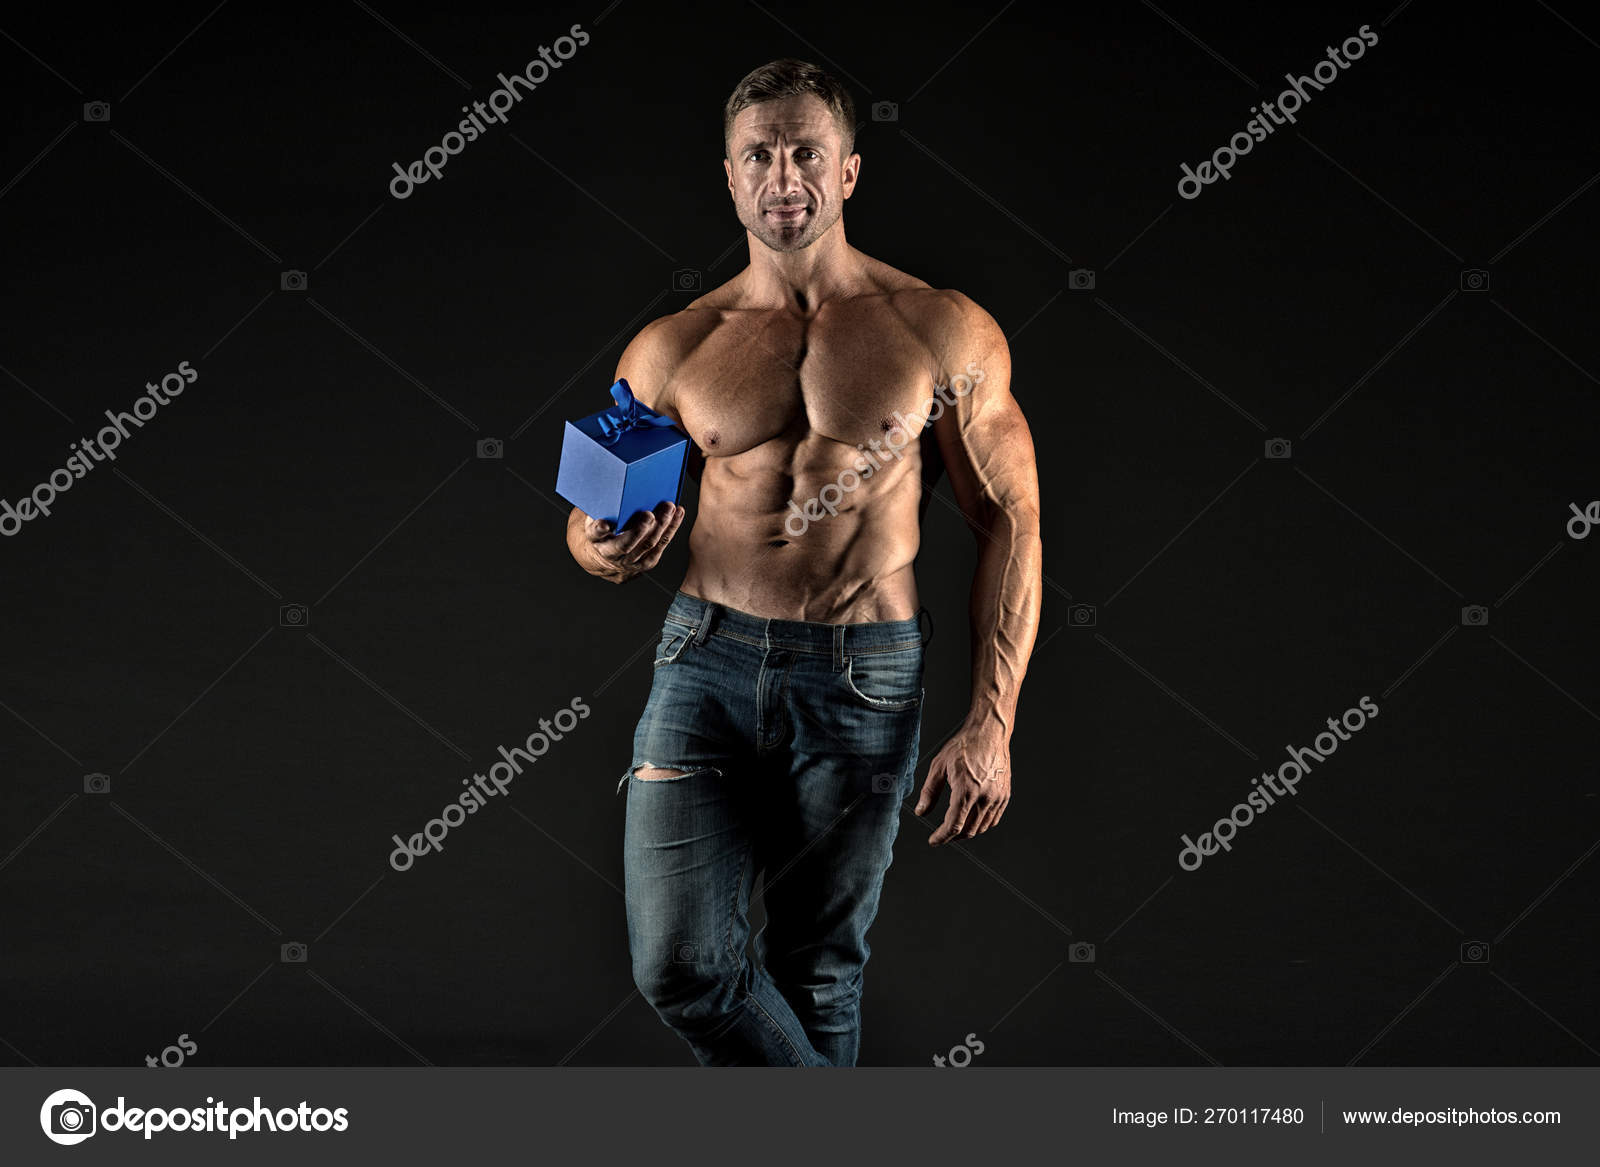 https://st4.depositphotos.com/2760050/27011/i/1600/depositphotos_270117480-stock-photo-something-special-macho-muscular-torso.jpg